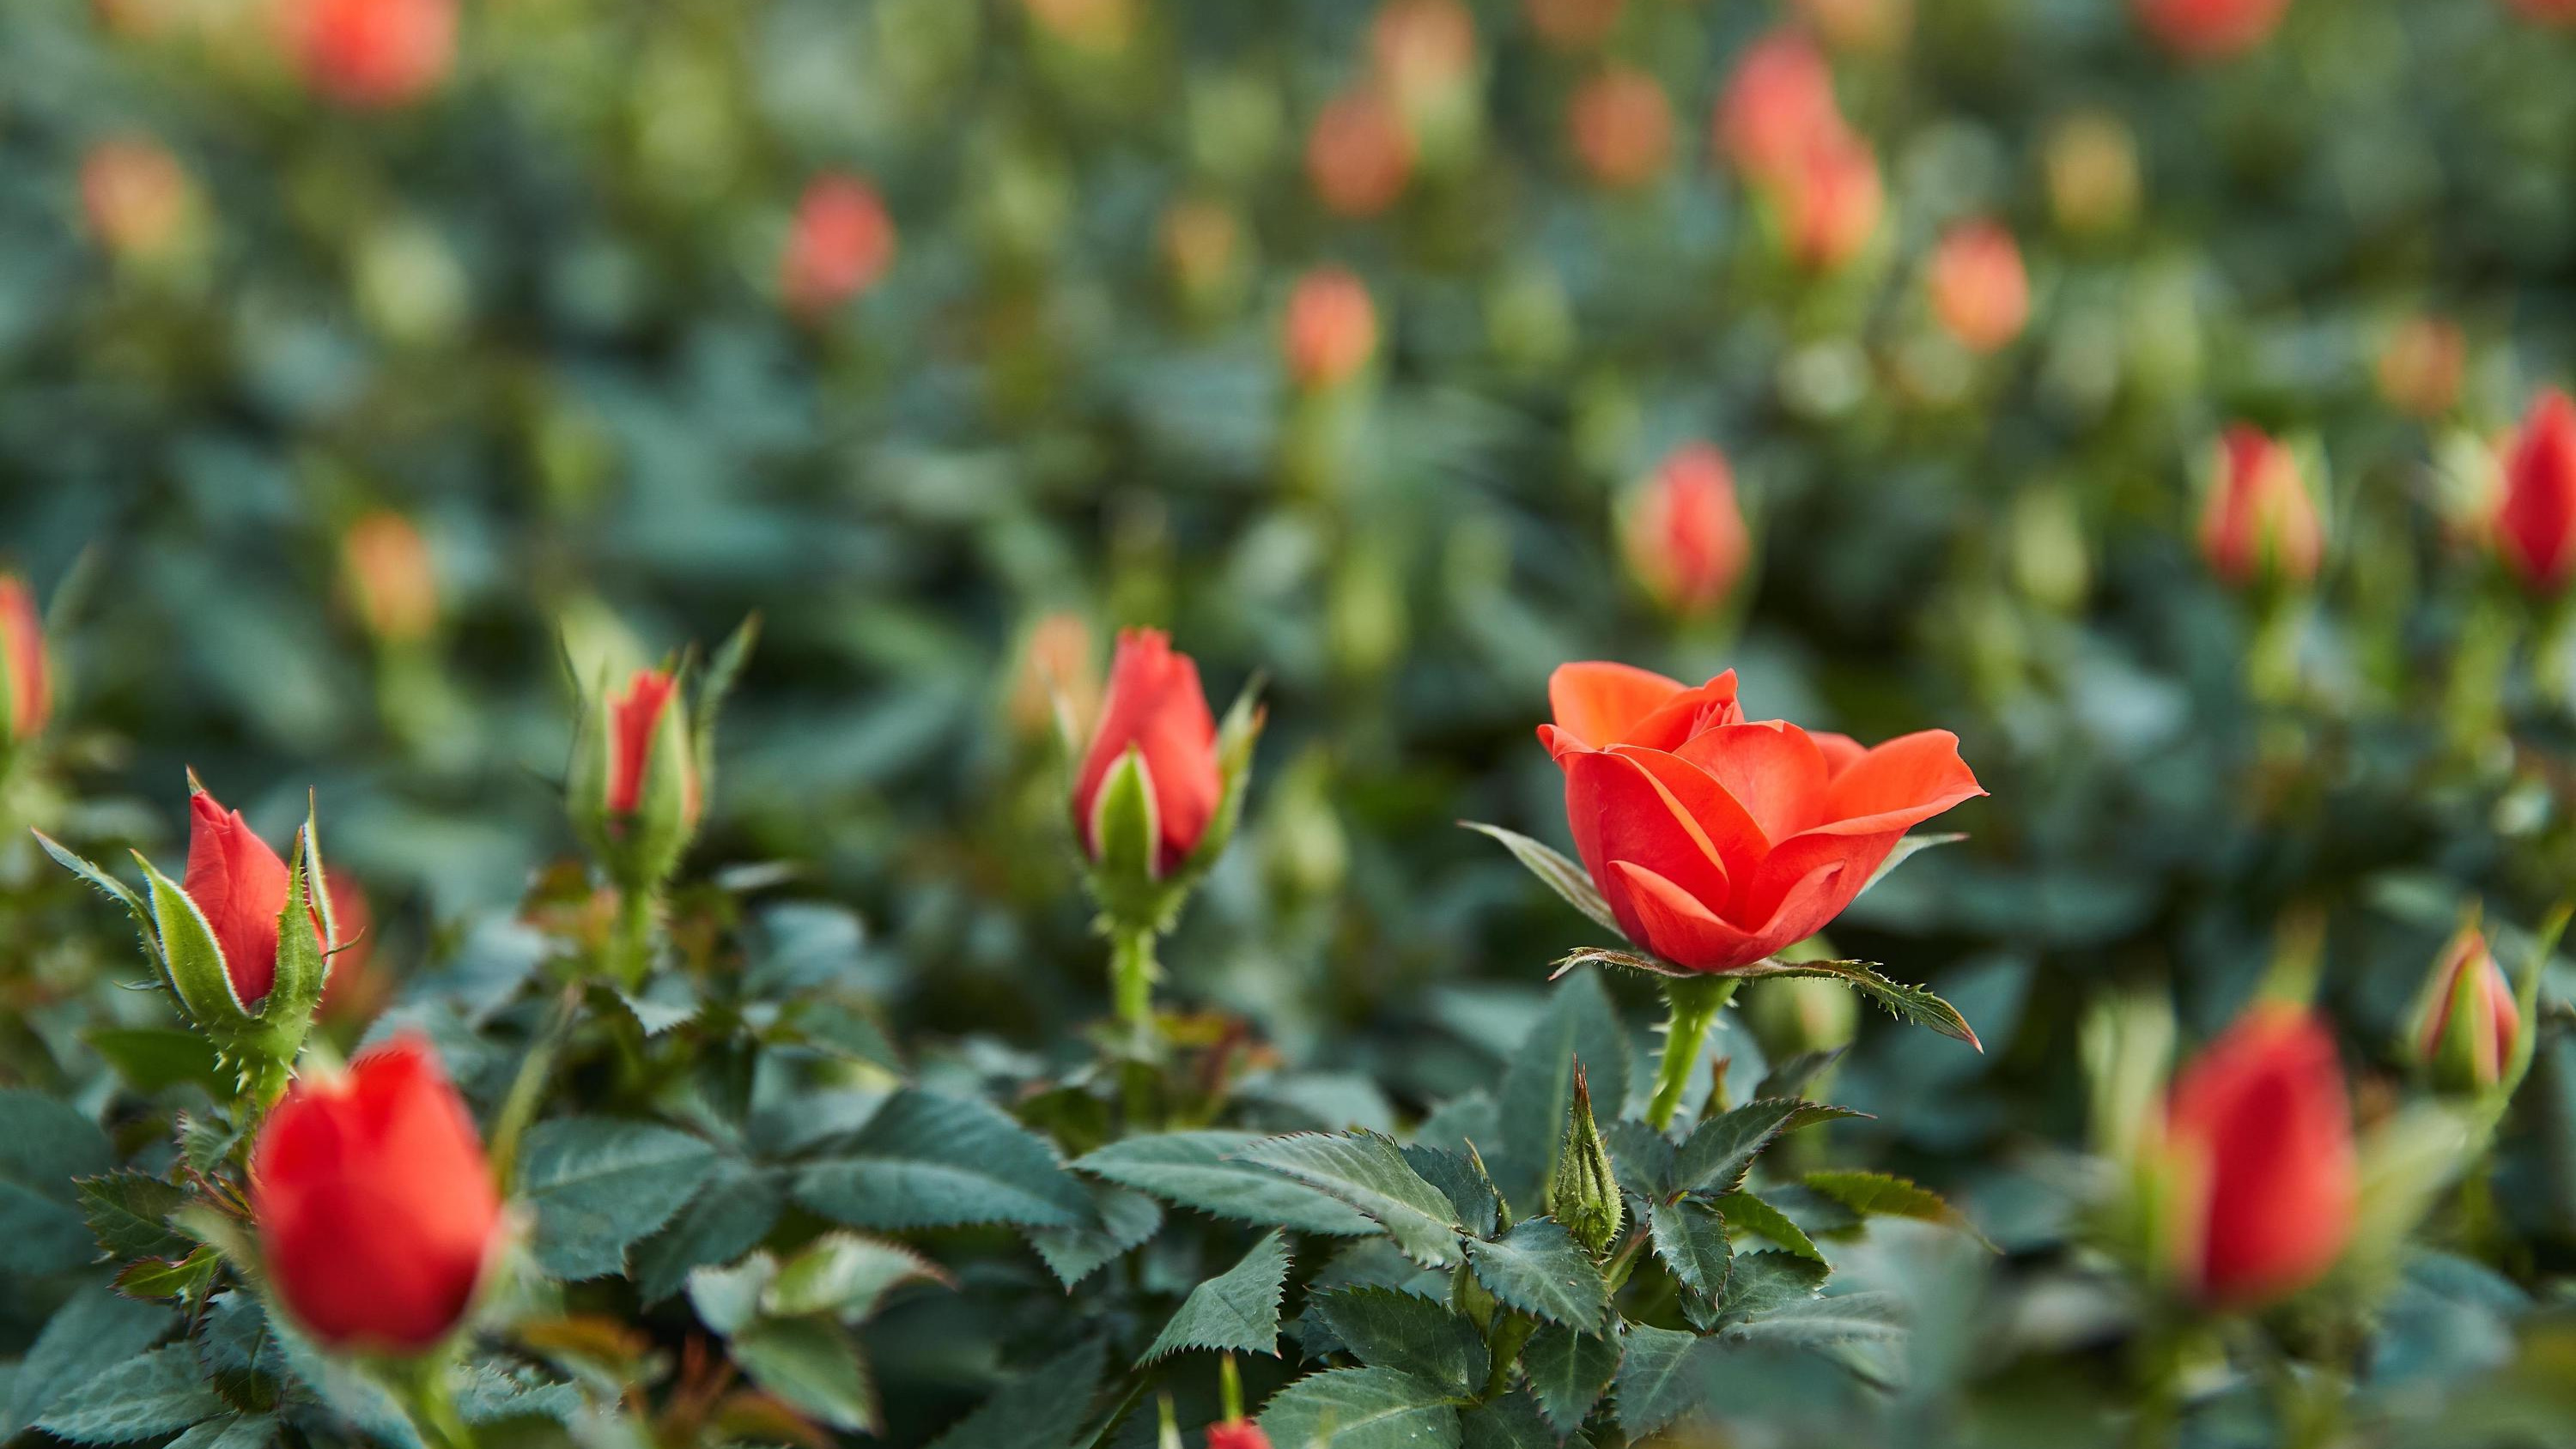 Сажаем пионы, гладиолусы и розы: самые важные работы в цветнике в мае — список дел и лучших сортов